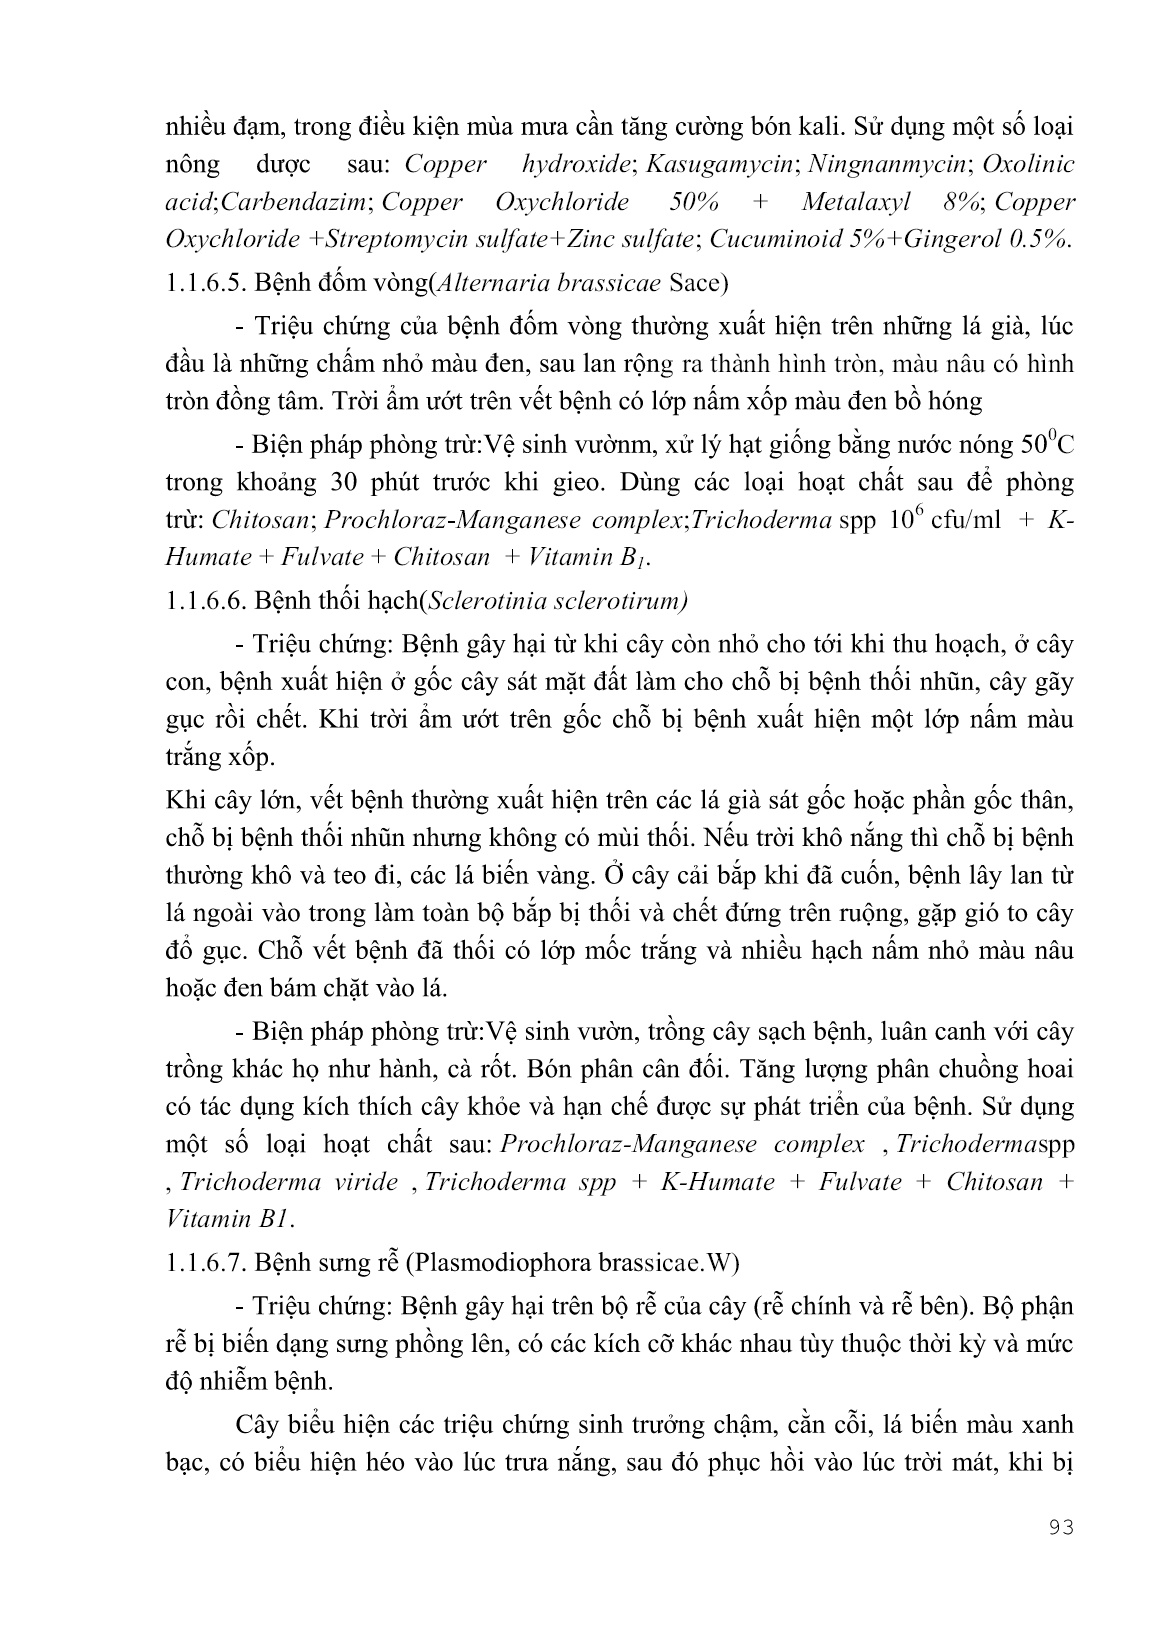 Giáo trình Kỹ thuật canh tác rau, hoa - Phần 2 (Trình độ: Cao đẳng) trang 7